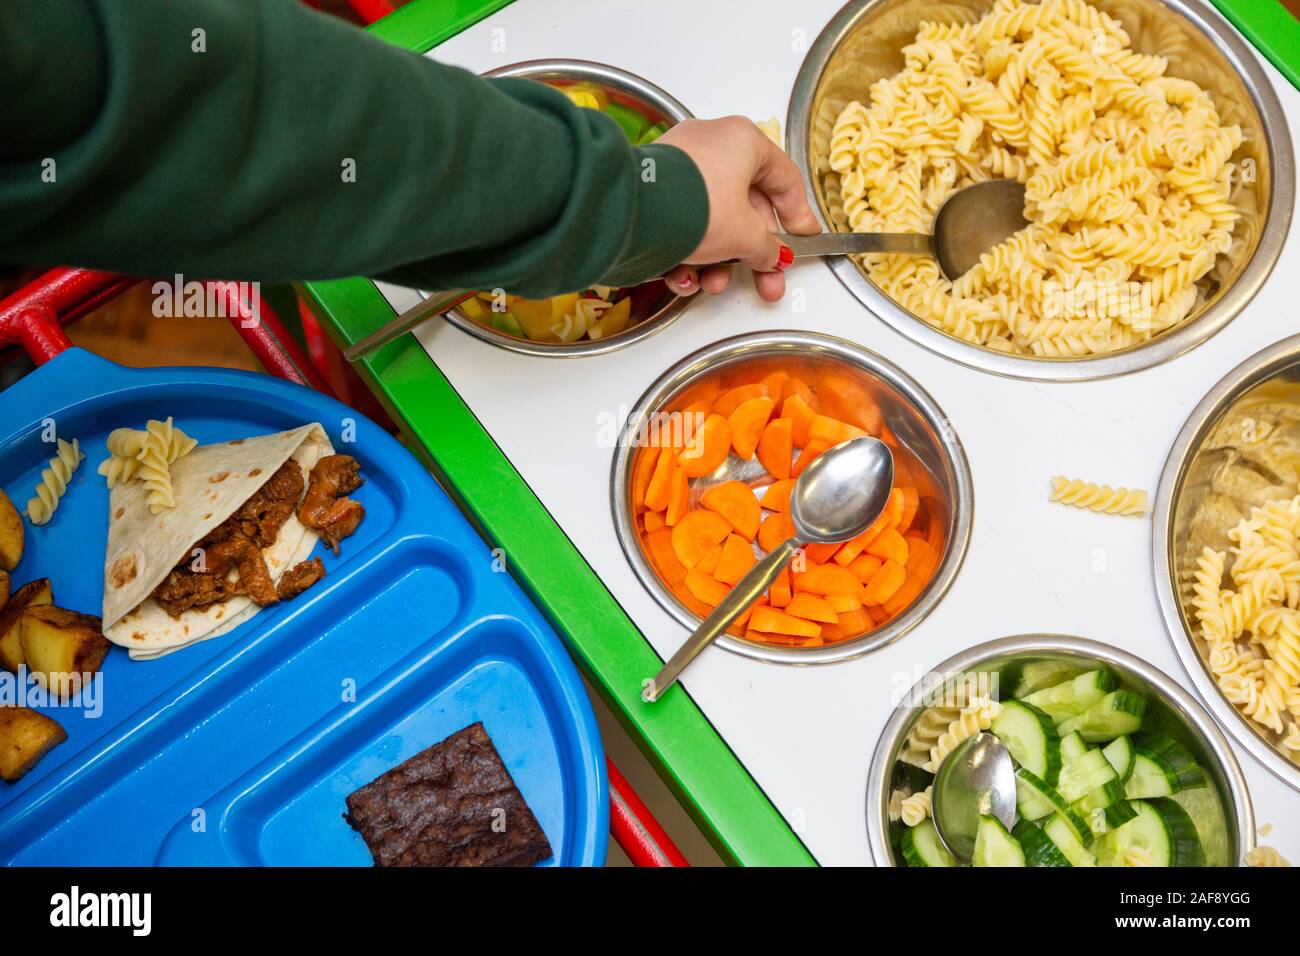 Le bac de l'école le déjeuner ou dîner dans une école primaire au Royaume-Uni Banque D'Images